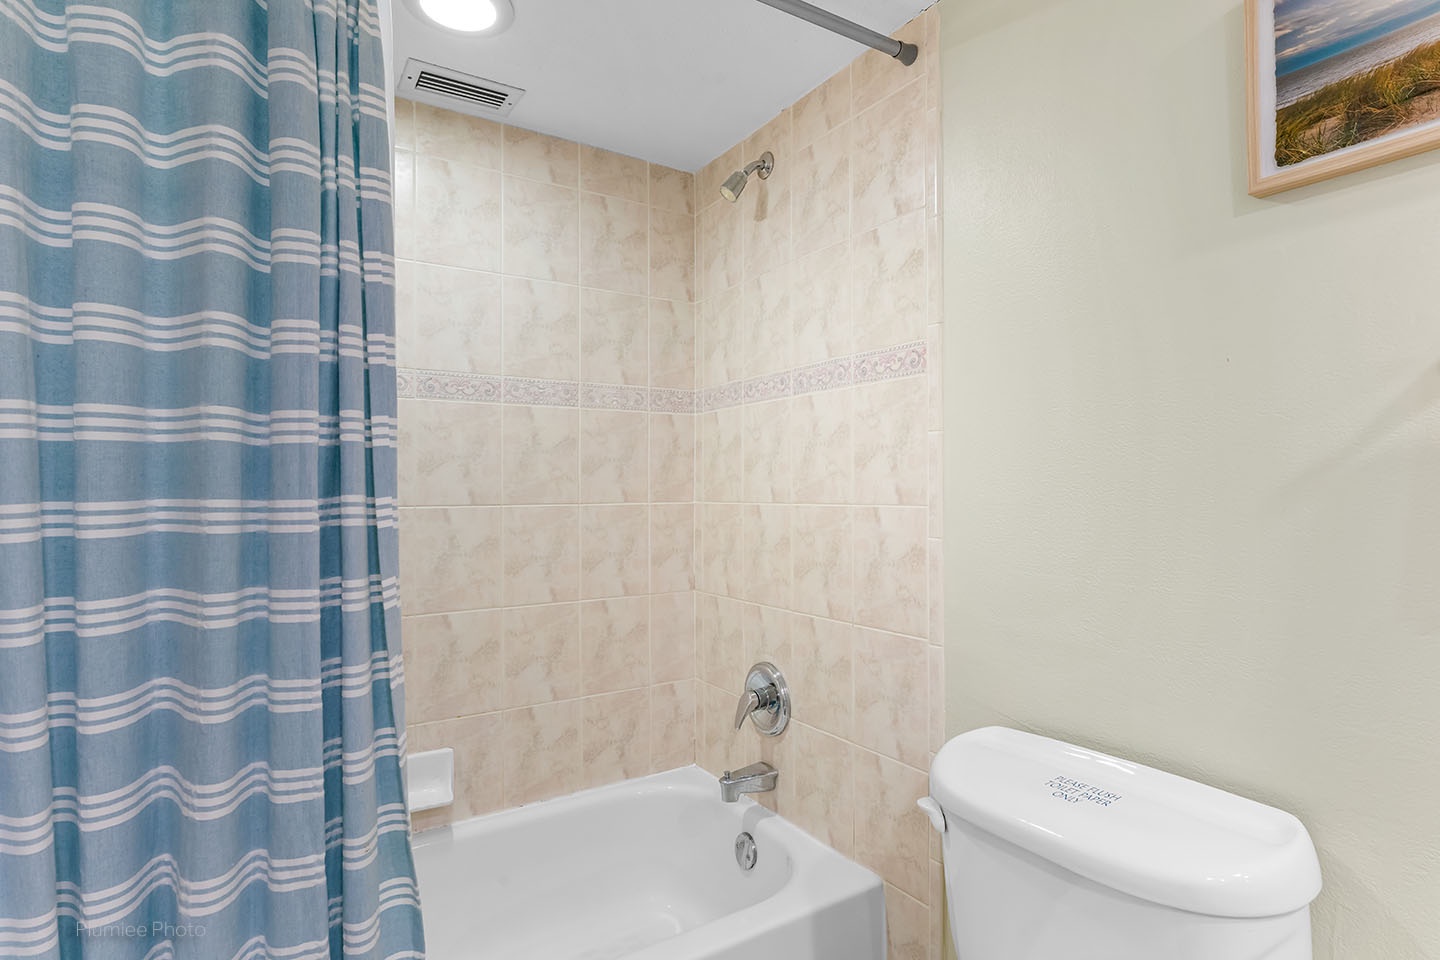 Hallway bathroom with tub/shower